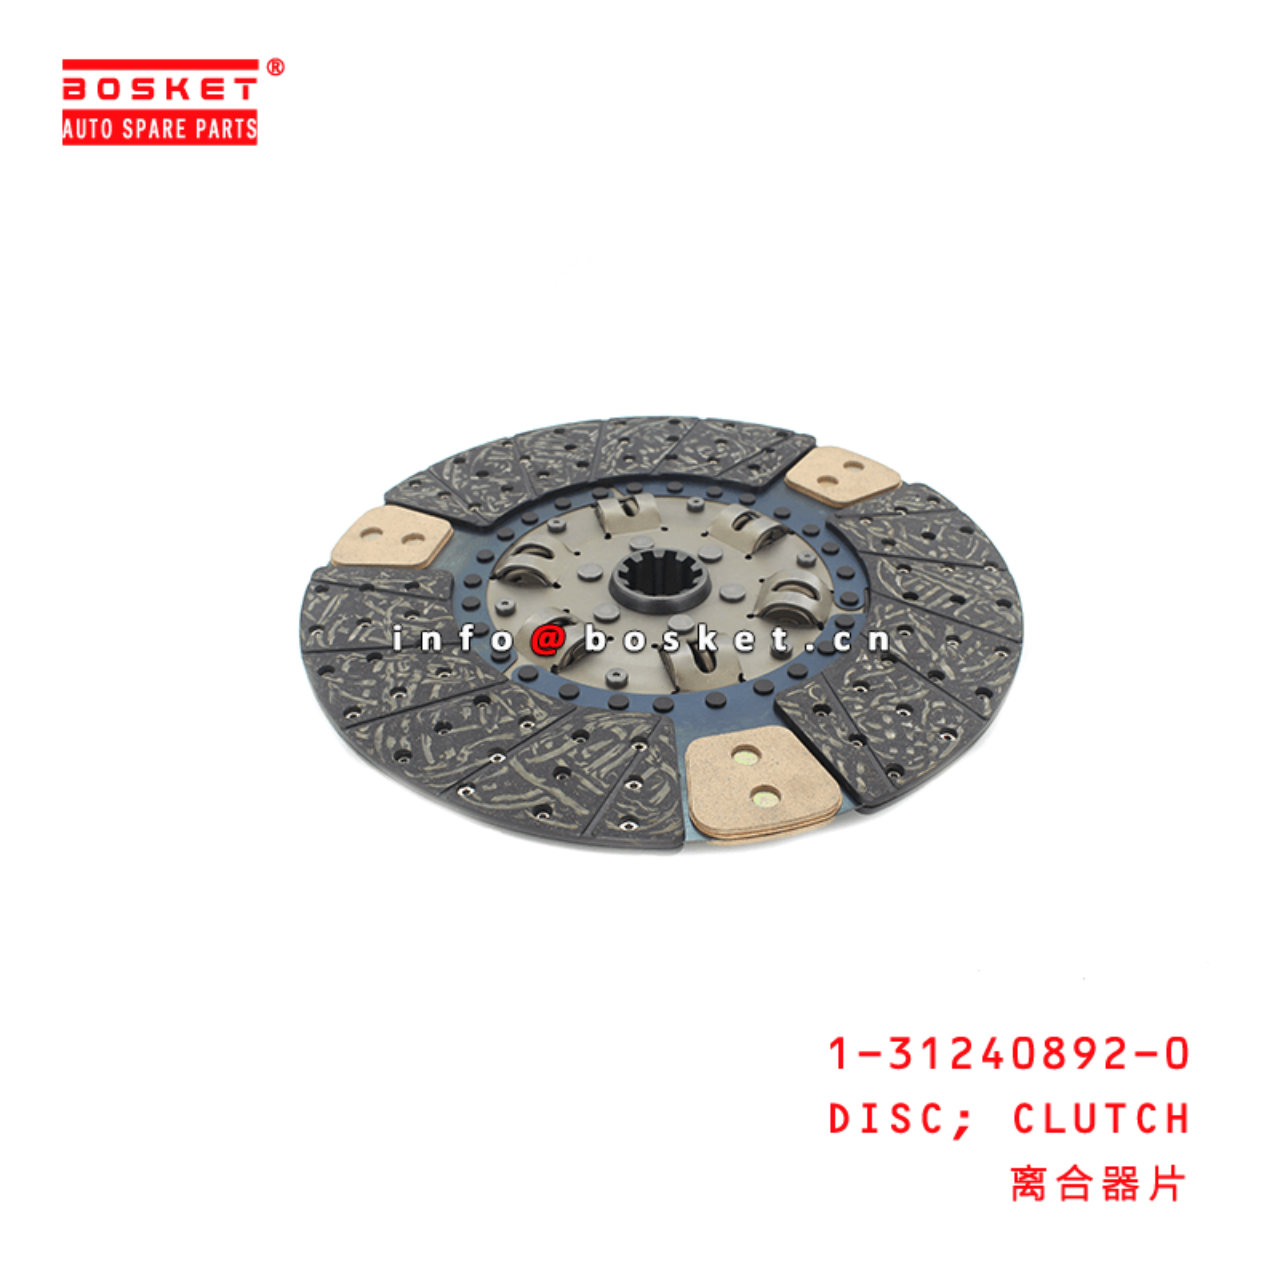 1-31240892-0 Clutch Disc 1312408920 Suitable for ISUZU CXZ81 10PE1